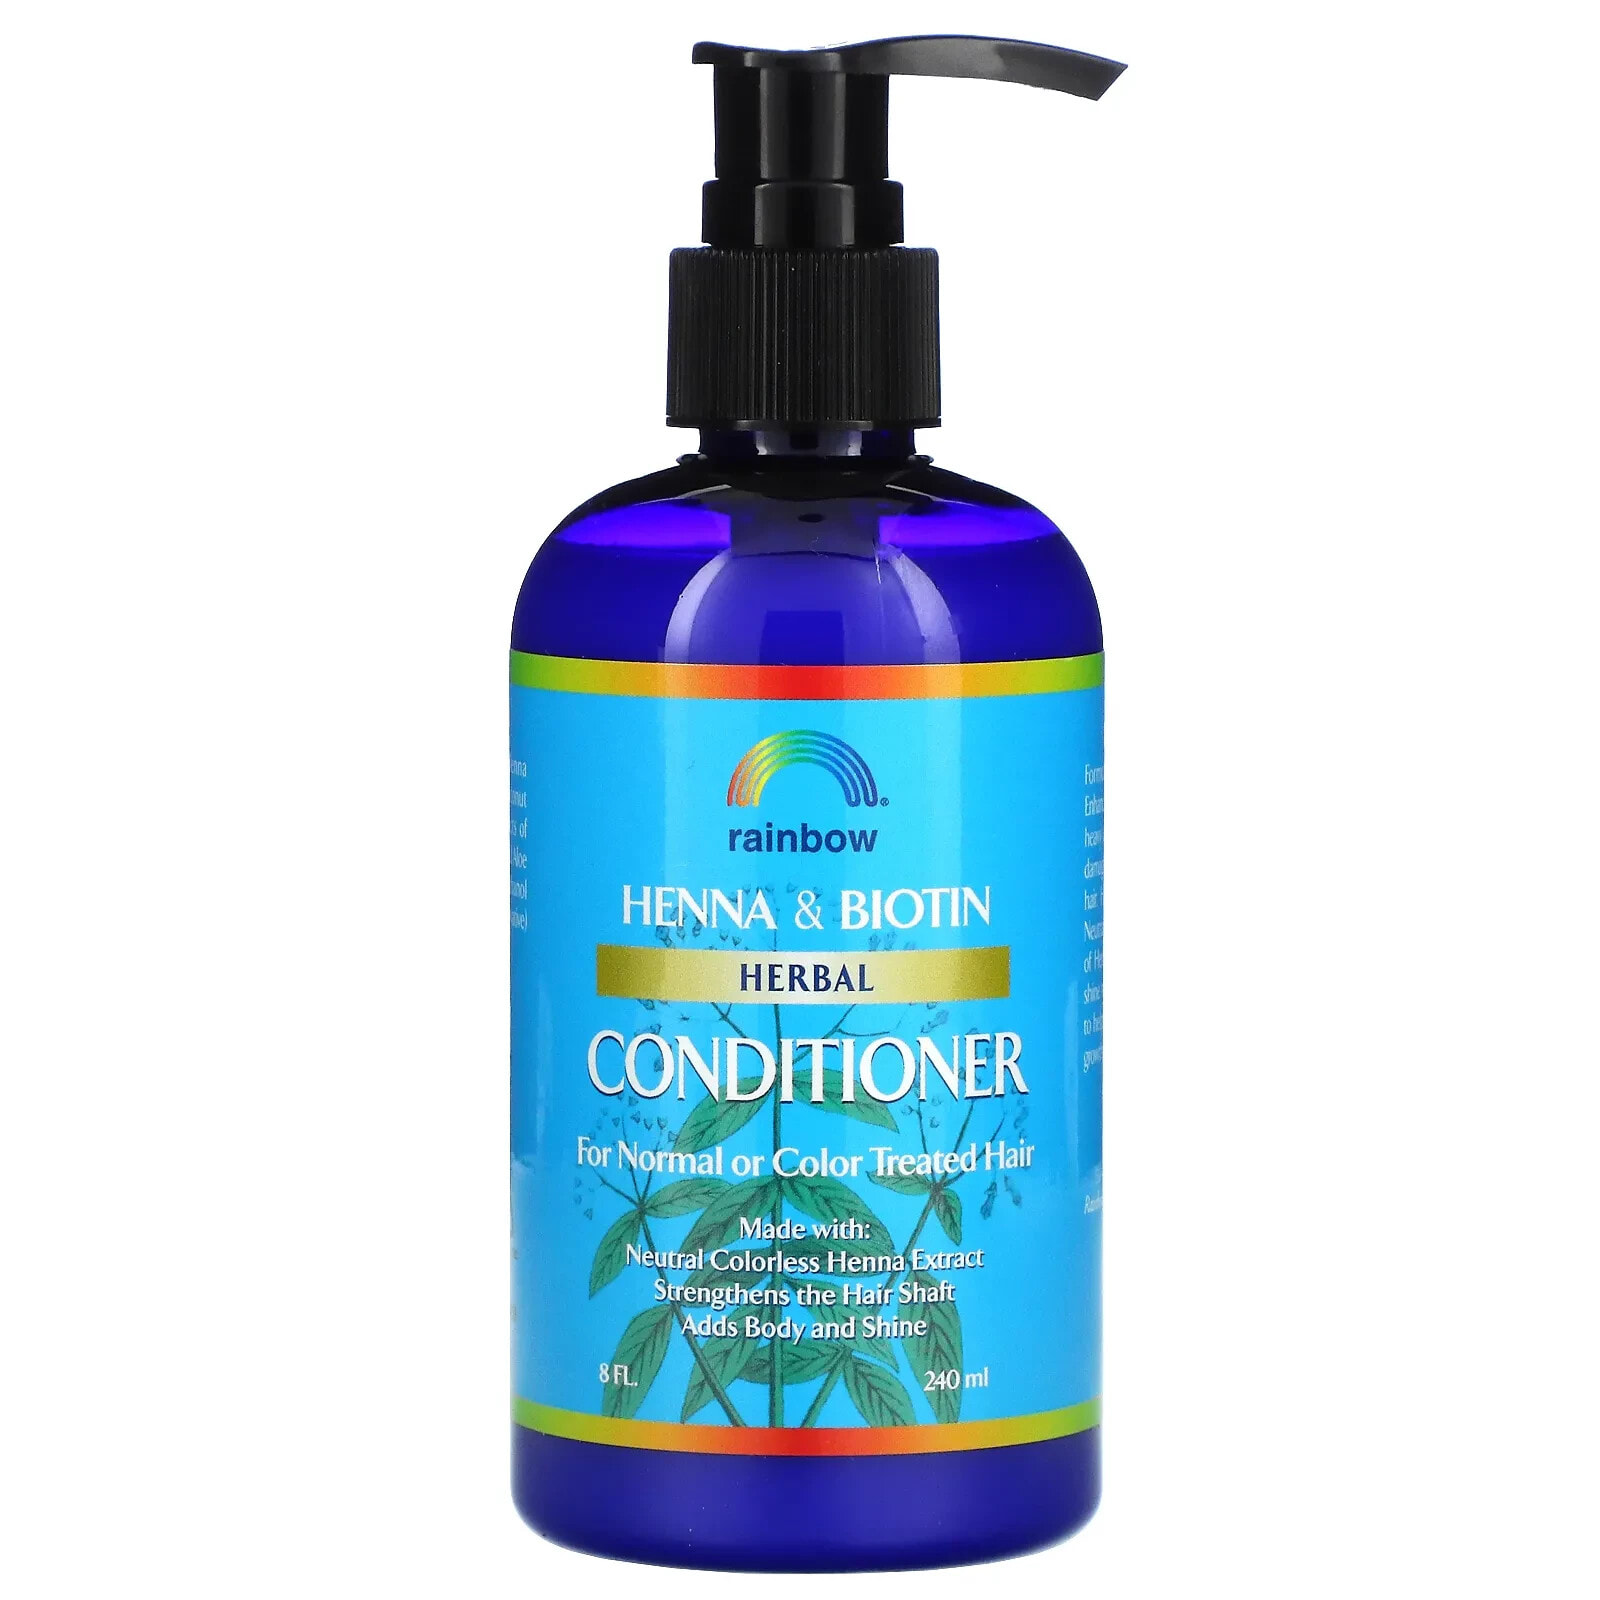 Rainbow Research Henna & Biotin Herbal Conditioner Кондиционер с хной и биотином, для нормальных и окрашенных волос 240 мл